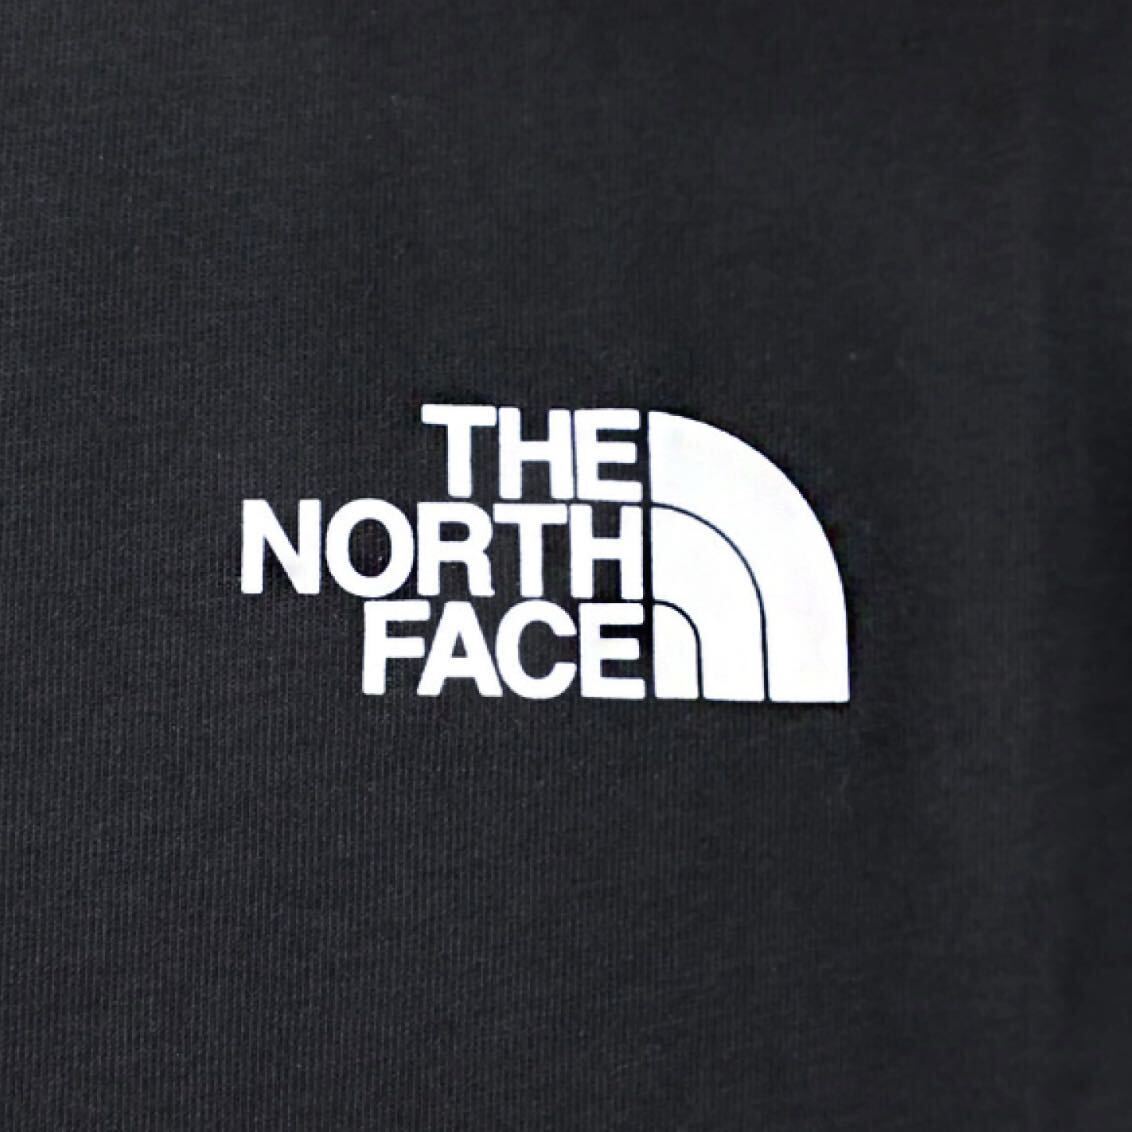 THE NORTH FACE ザ ノースフェイス VERTICAL NSE メンズ 半袖 Tシャツ バッグデザイン 海外限定 正規品 完売品 ブラック 黒 M L コットン